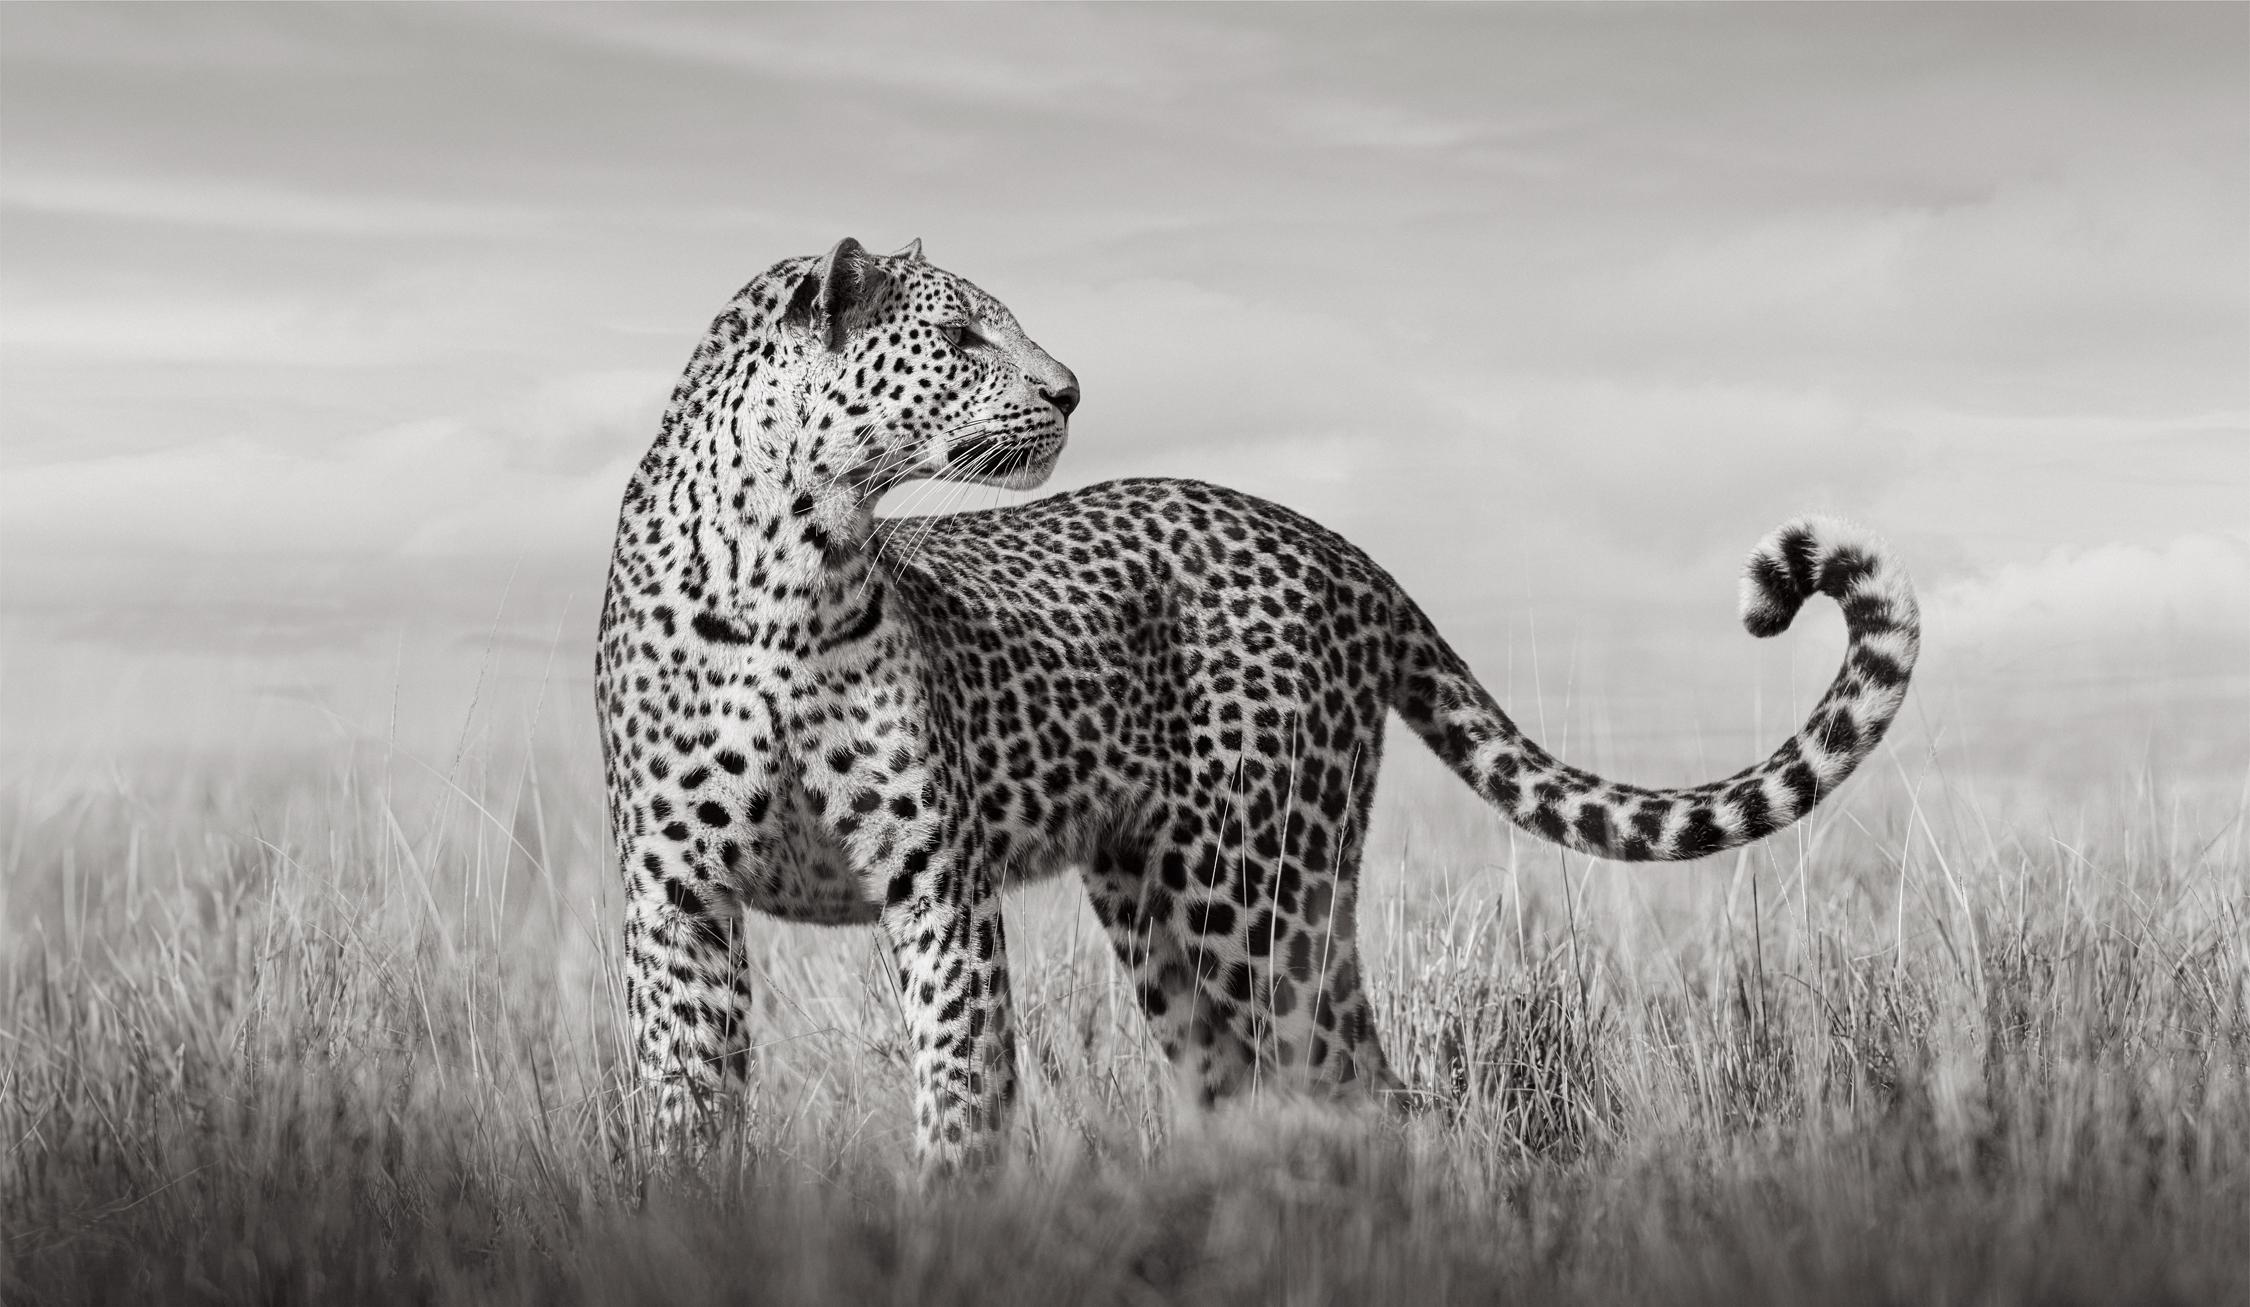 Drew Doggett Black and White Photograph – Ein Leopard steht im hohen Gras Kenia und betrachtet etwas Unsichtbares